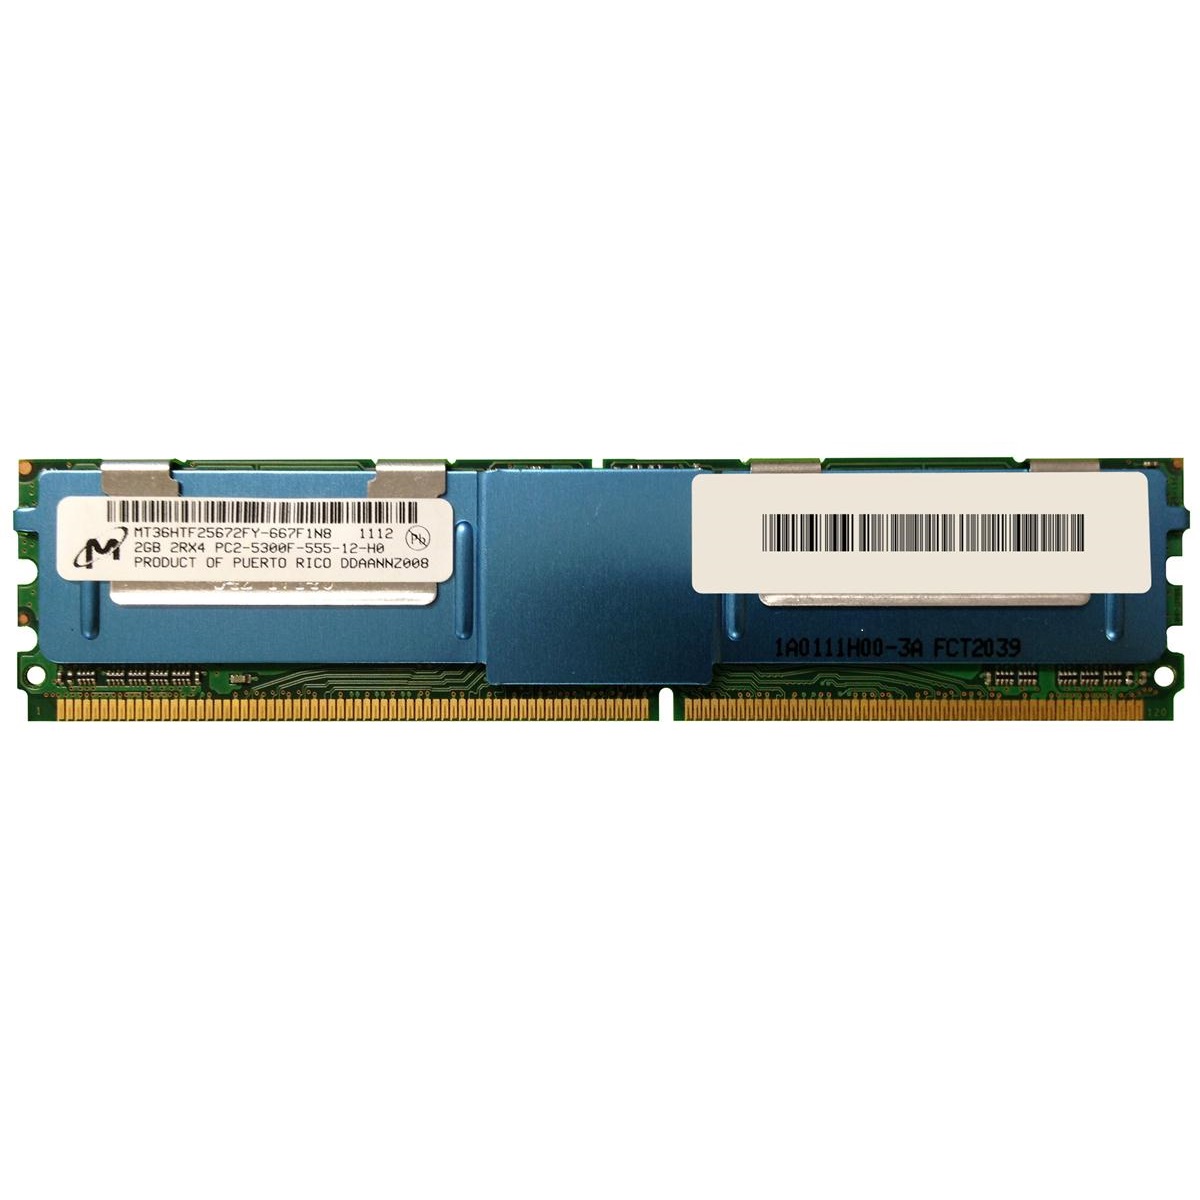 رم سرور DDR2 تک کاناله 667 مگاهرتز CL5 میکرون مدل MT36HTF25672FY-667F1N8 ظرفیت 2 گیگابایت